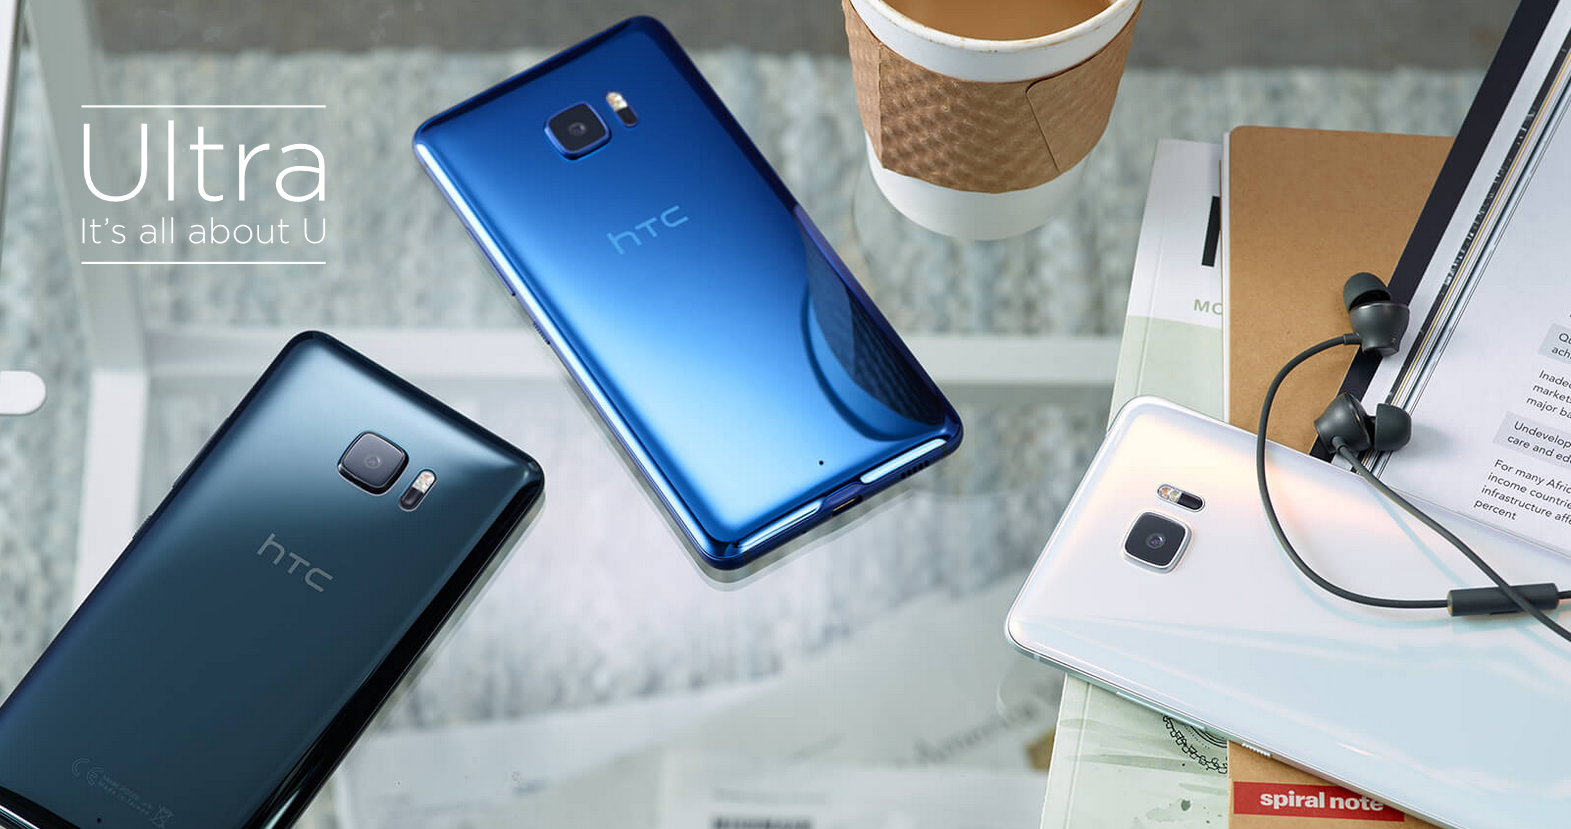 HTC udává nový směr svým vlajkovým modelům, zapomeňte na fádní kovová těla a přivítejte blyštivé sklo, HTC U Ultra je prostě sexy smartphone s Androidem